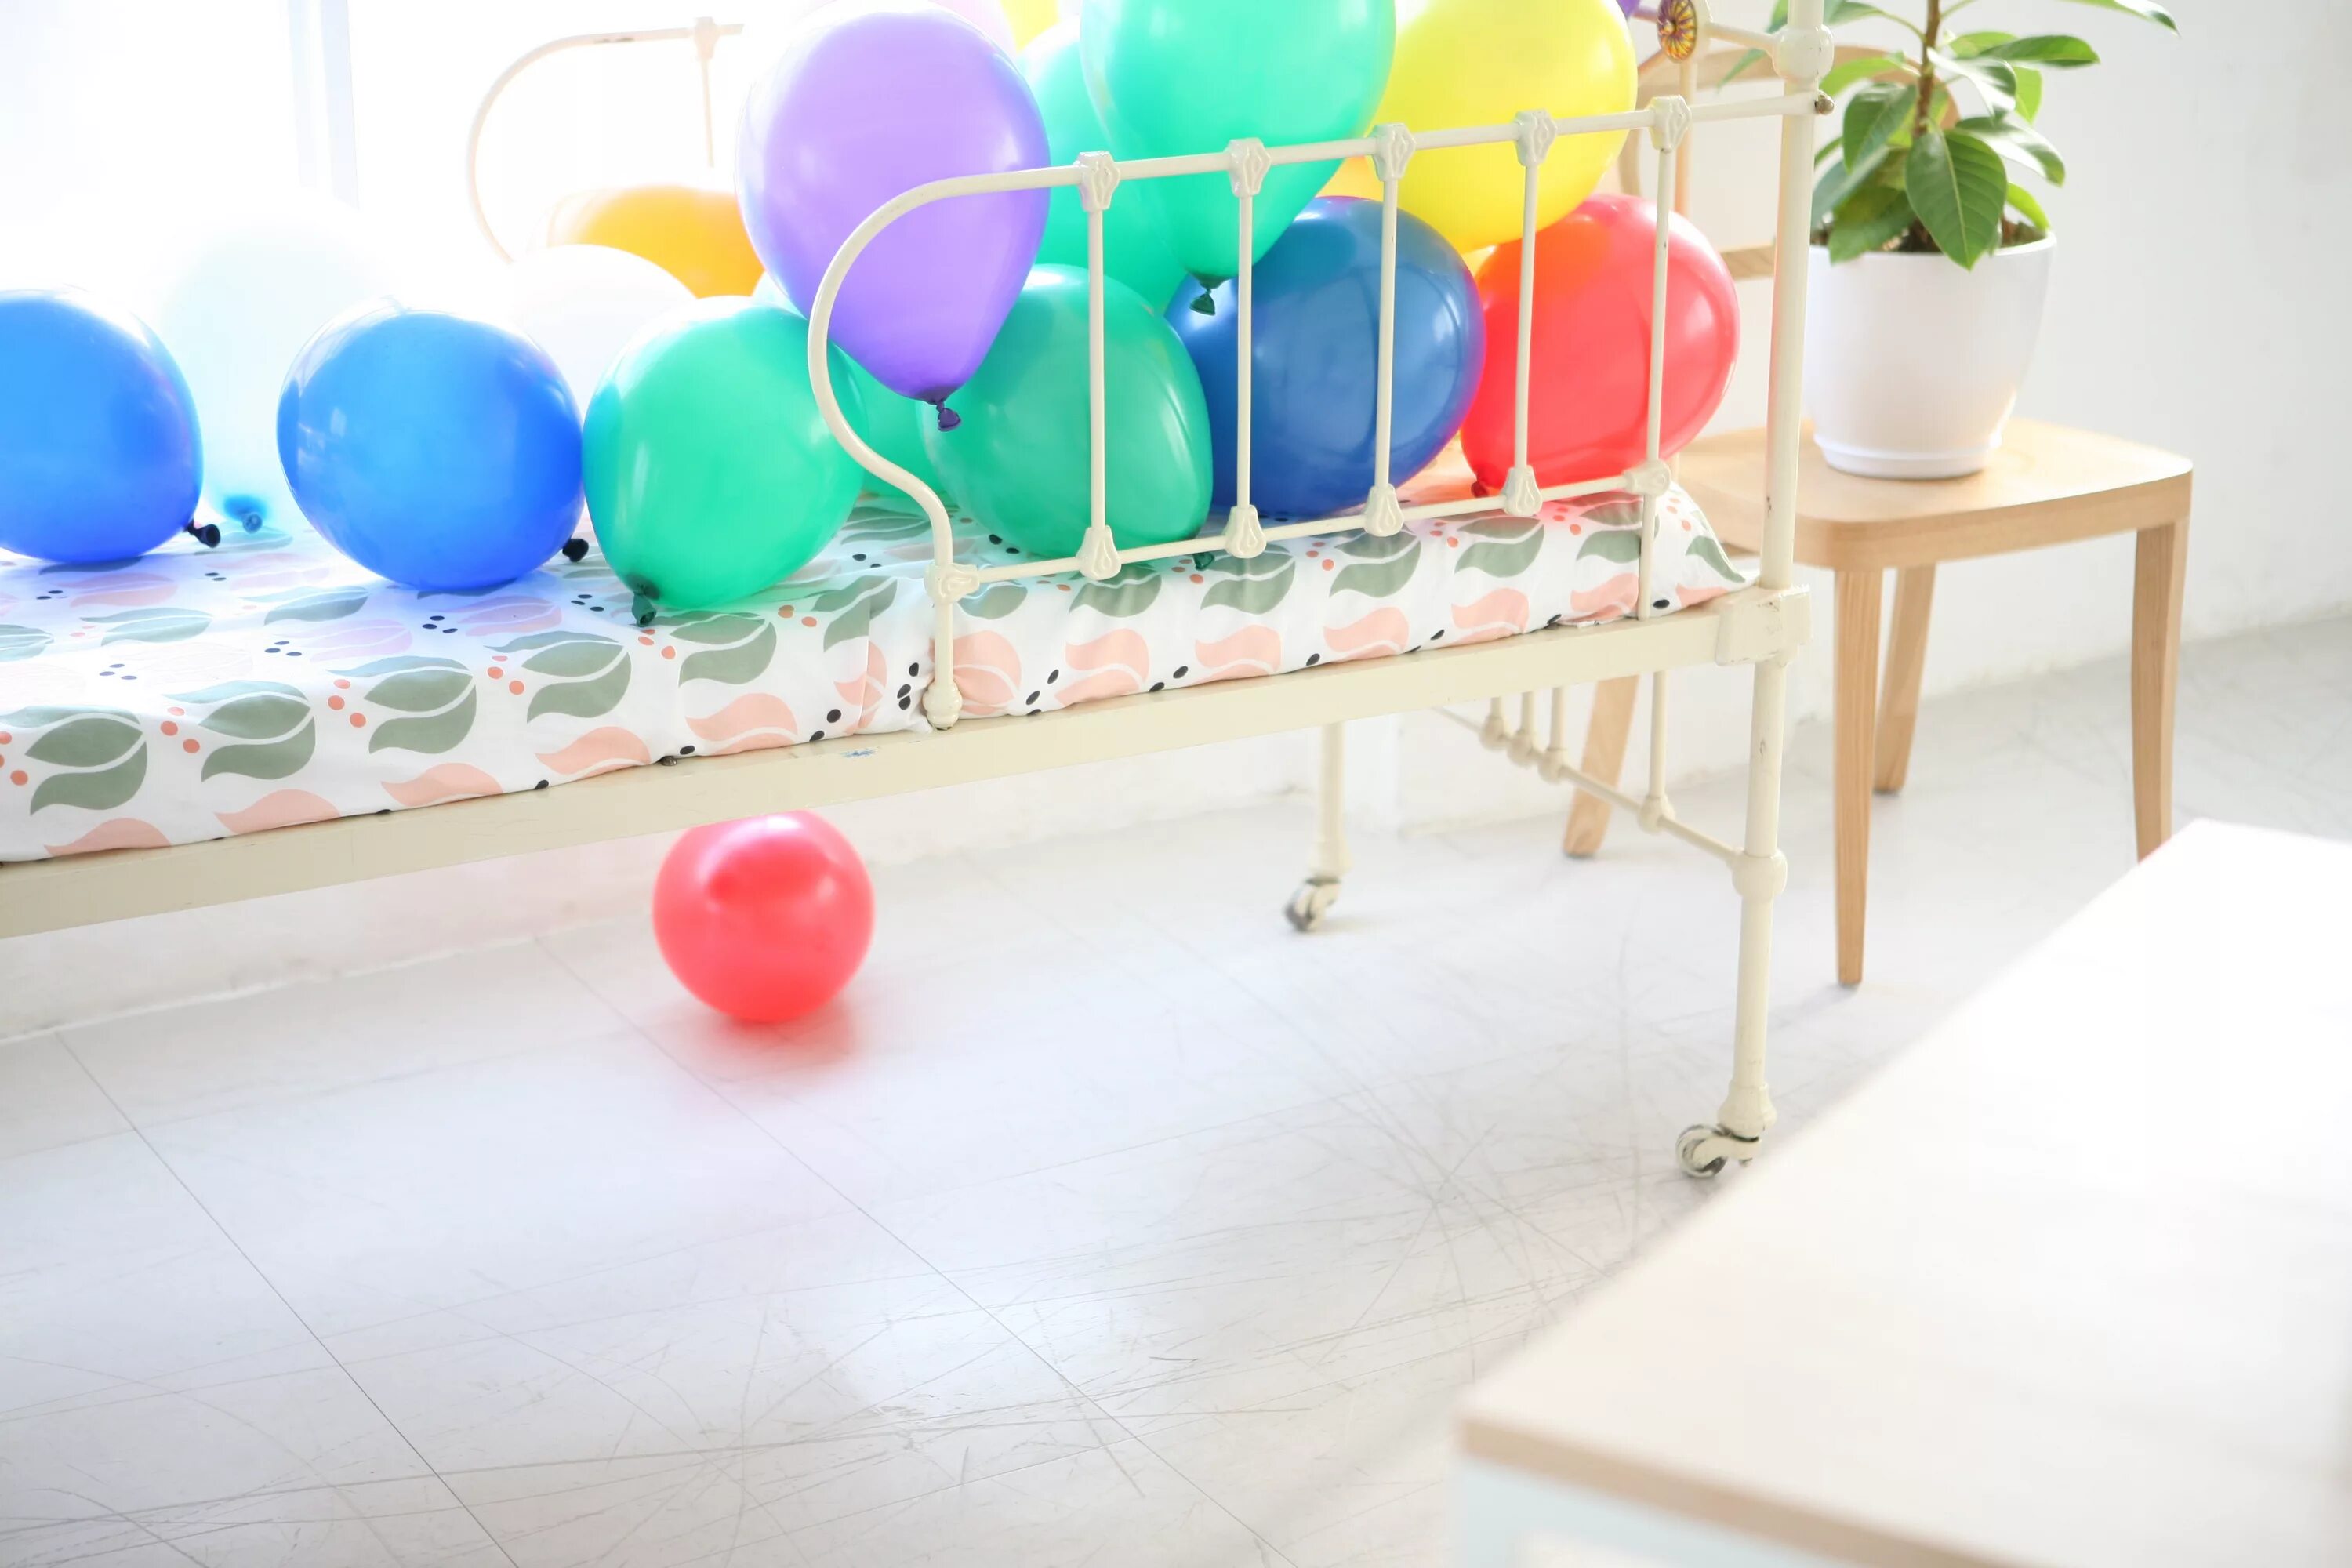 Мебель шары цена. Кровать воздушный шар. Шарики воздушный кровать. Мебель из шариков. Напольное покрытие baloon.